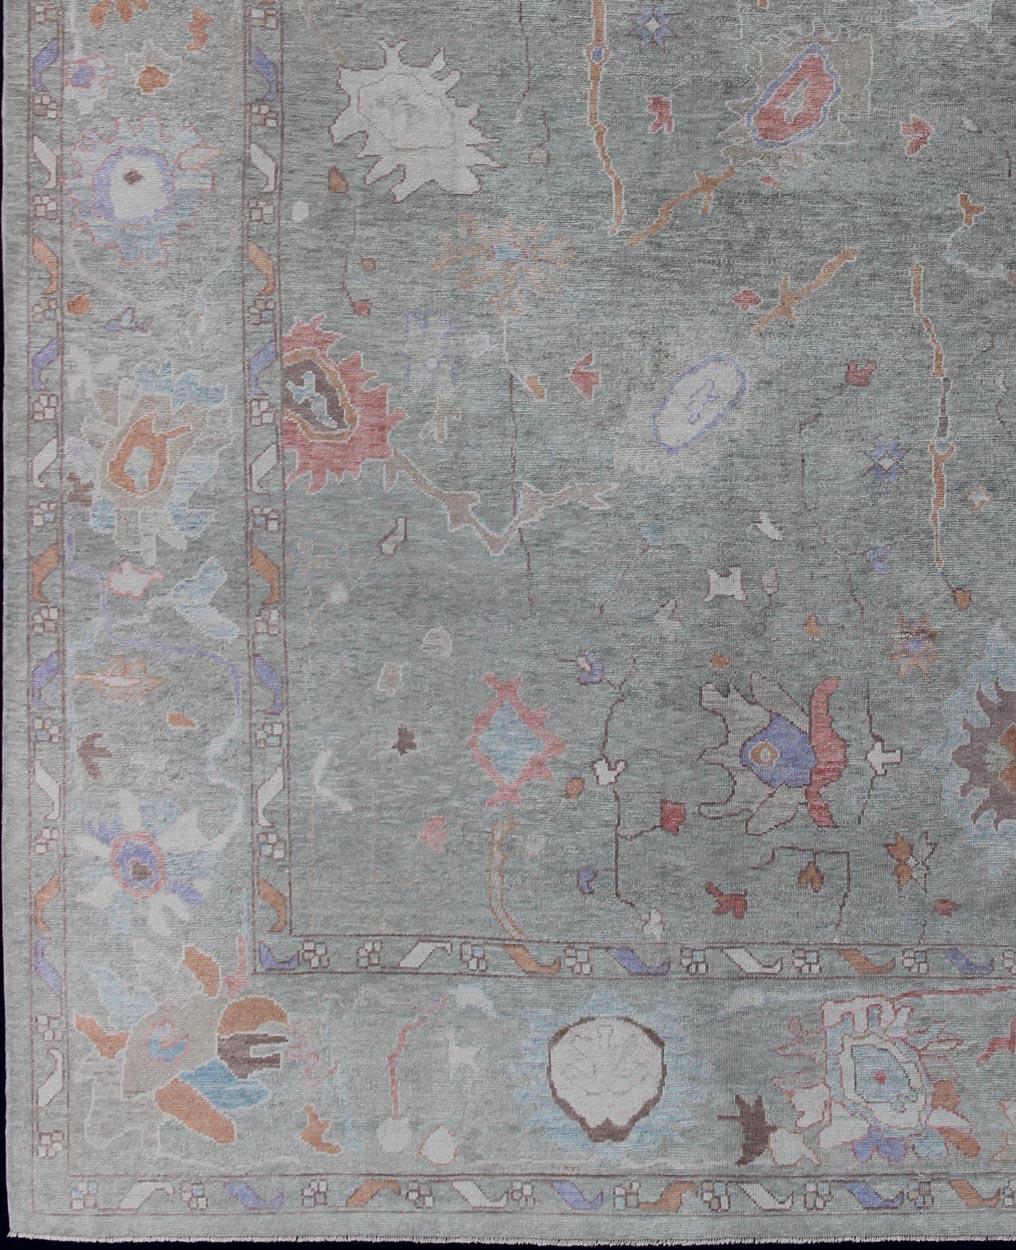  Grand tapis turc de reproduction Oushak en vert clair en laine fine filée à la main.
Tapis turc Oushak avec palette de couleurs vert clair et multicolore, motif floral all-over, Keivan Woven Arts/ tapis EN-179603, pays d'origine / type : Turquie /